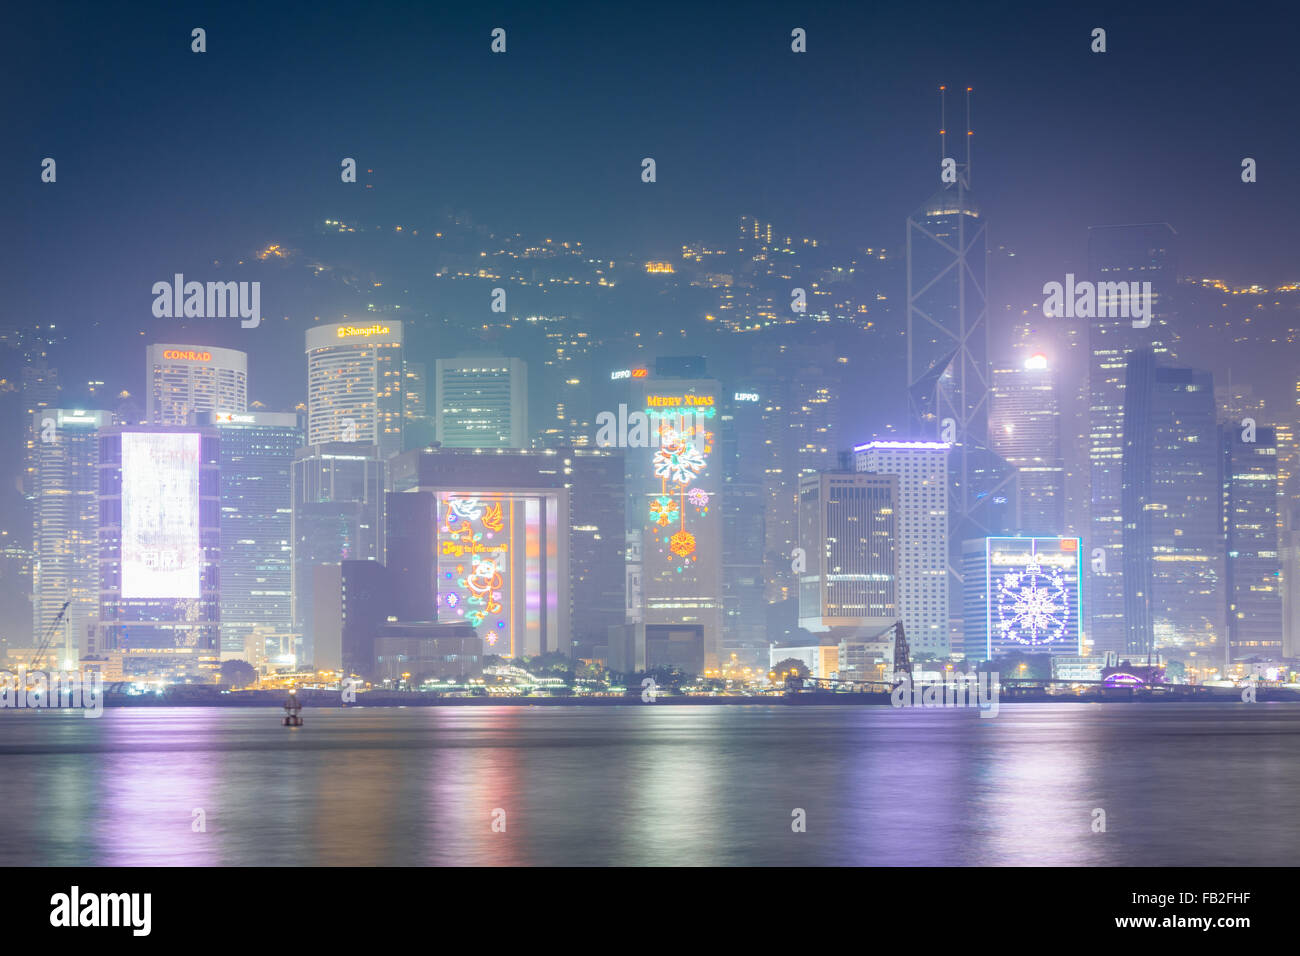 View of modern skyscrapers on Hong Kong Island at night, from Tsim Sha Tsui, in Kowloon, Hong Kong. Stock Photo